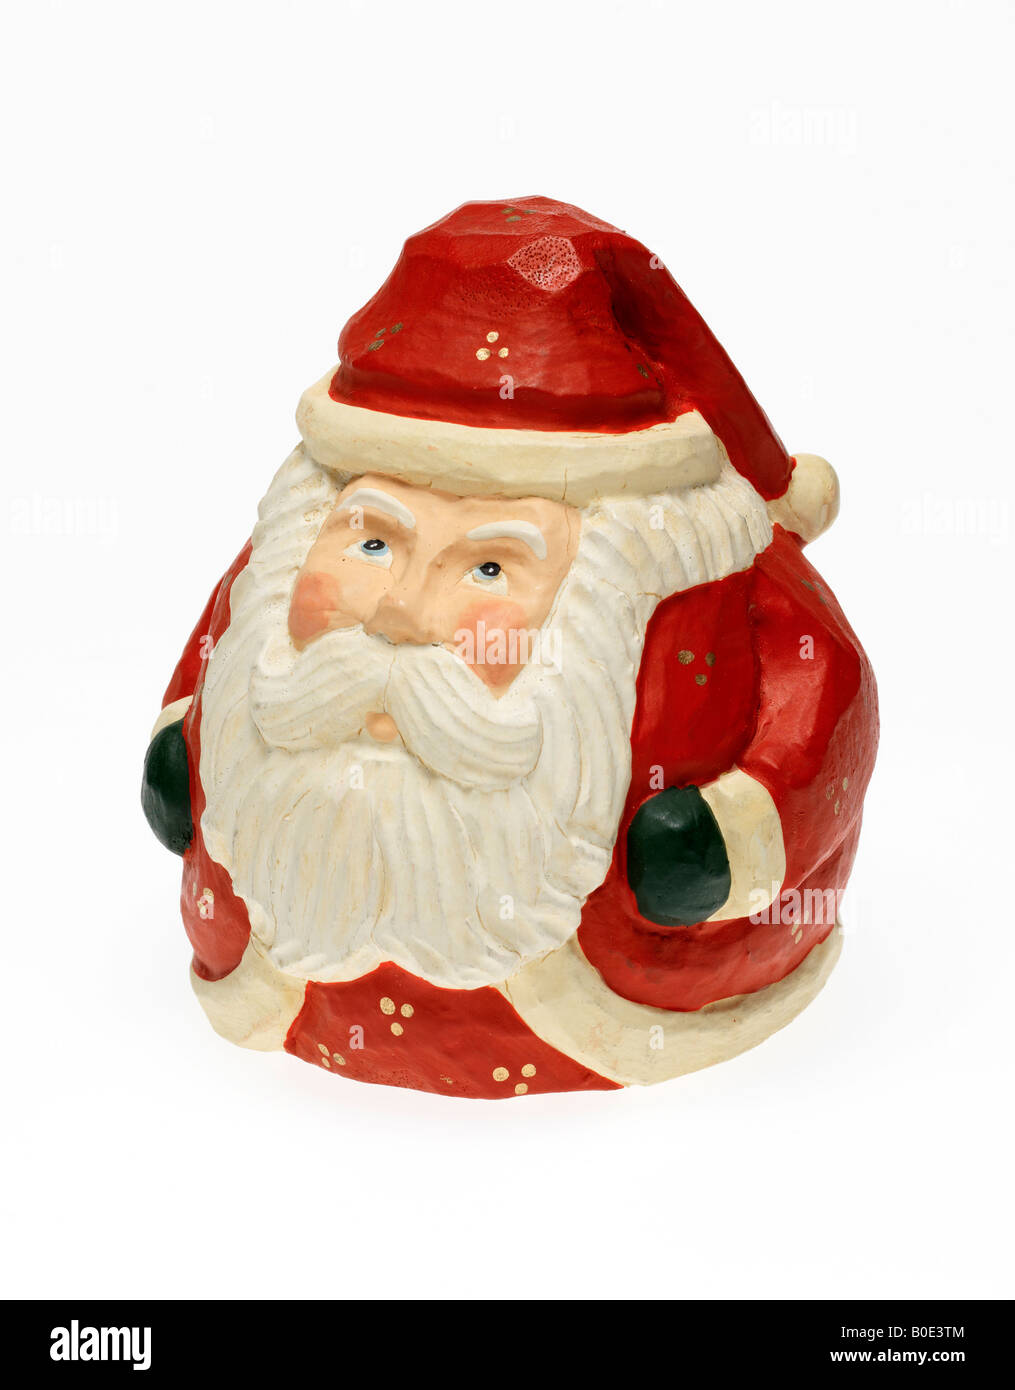 Noël Santa Claus figurine Banque D'Images